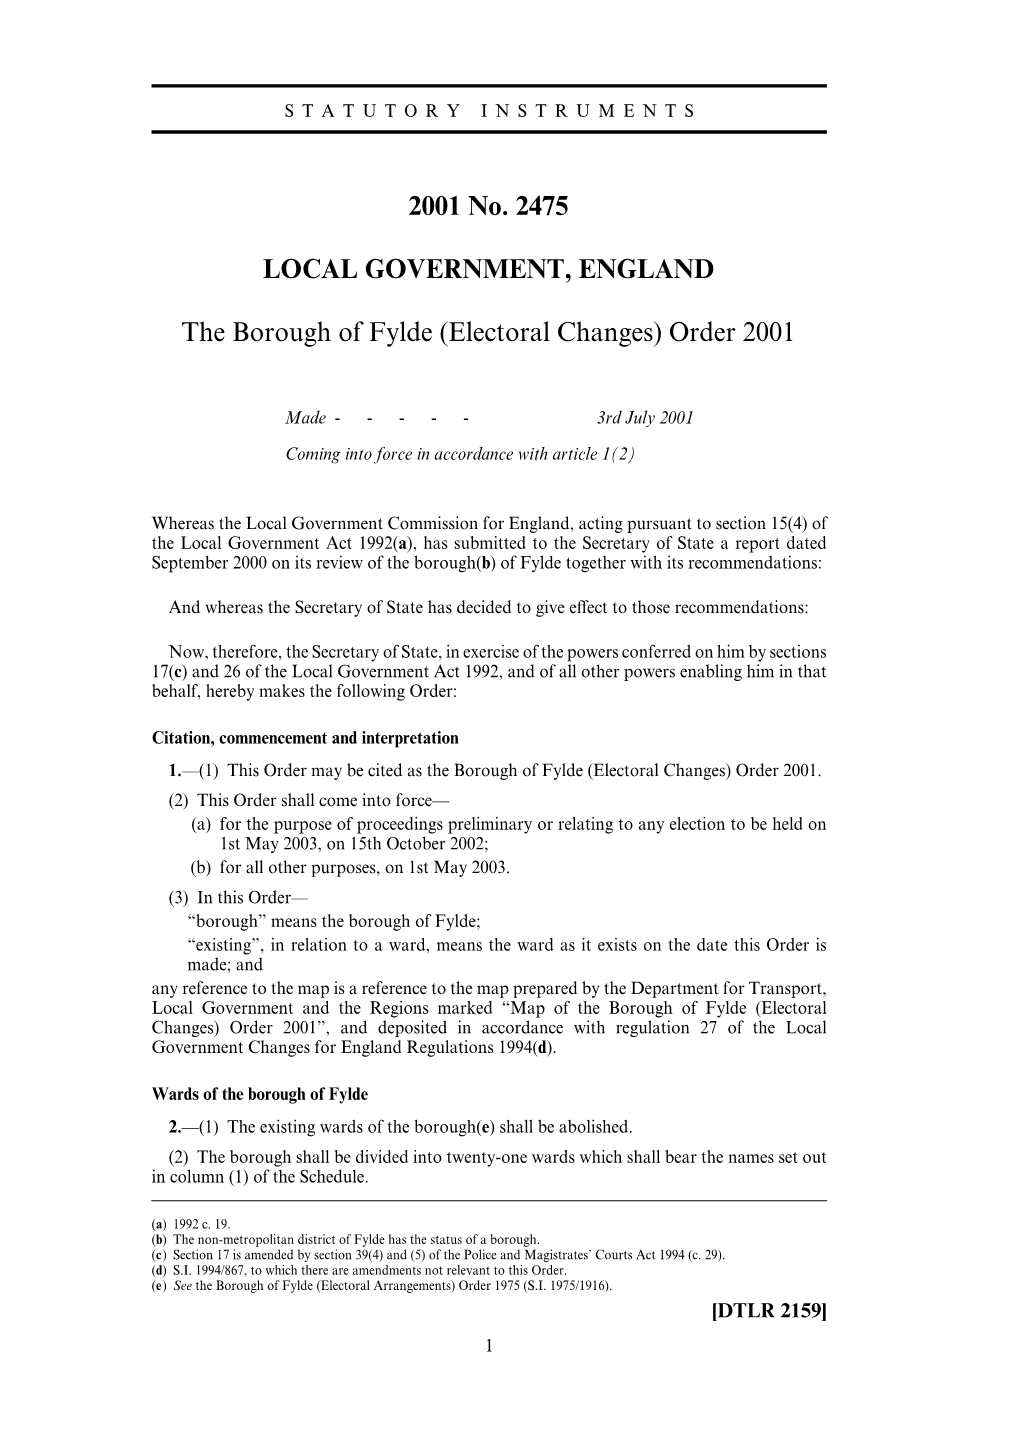 2001 No. 2475 LOCAL GOVERNMENT, ENGLAND The